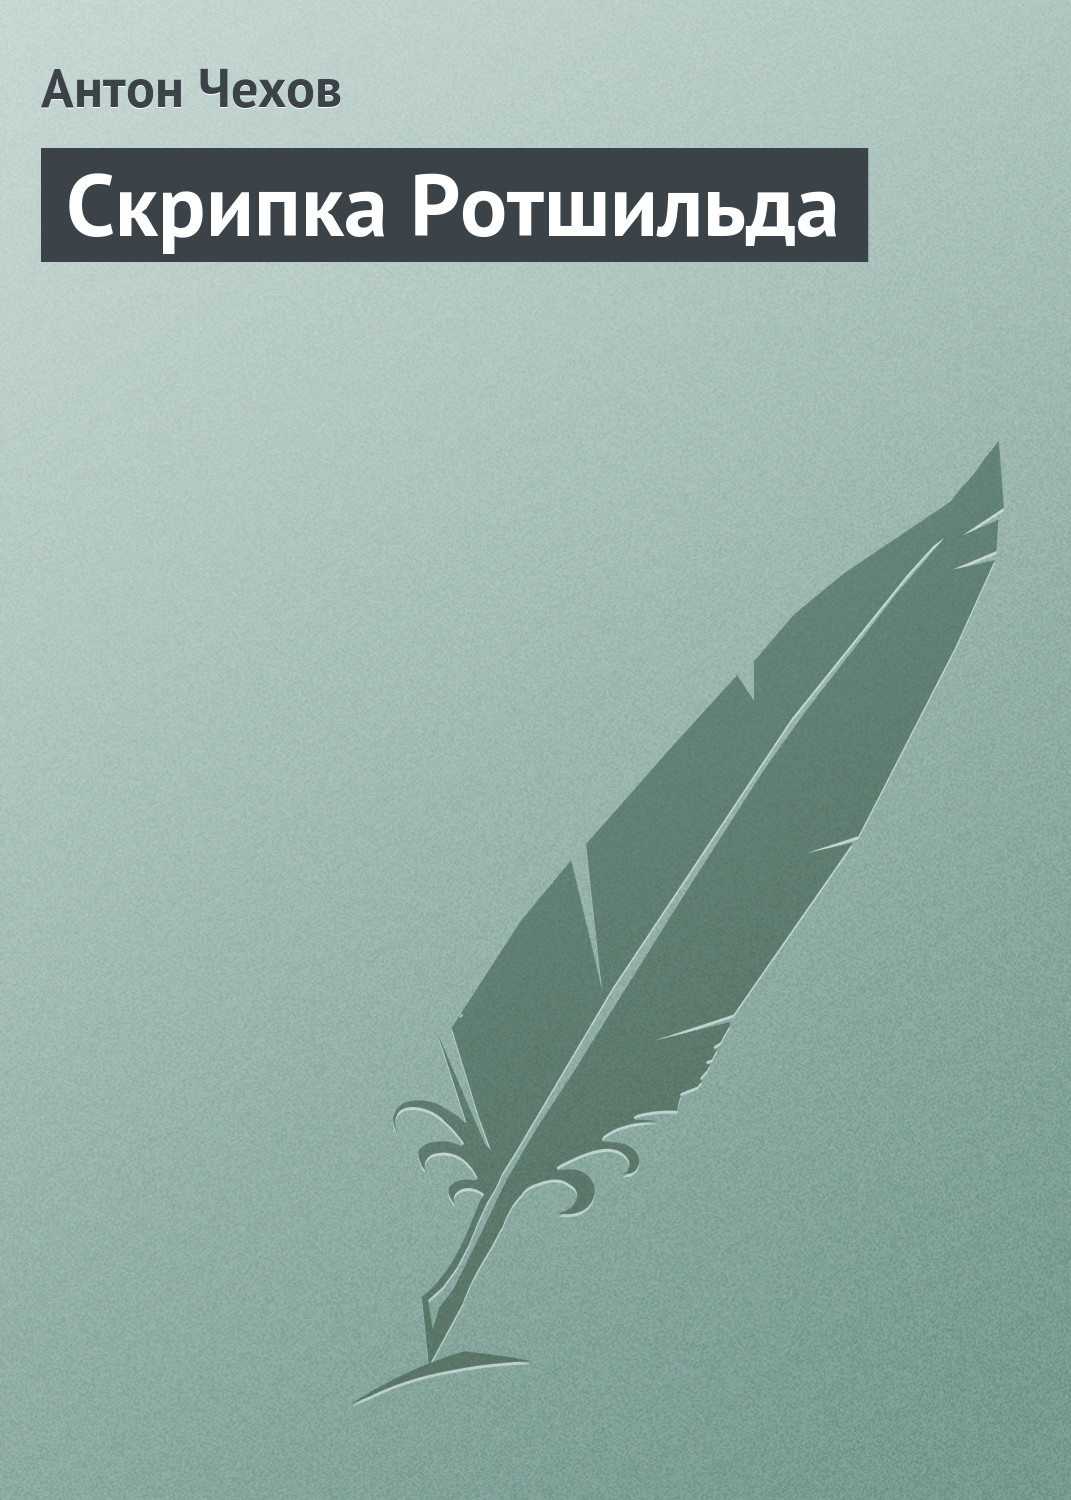 Чехов антон павлович. скрипка ротшильда (стр. 1) - modernlib.net